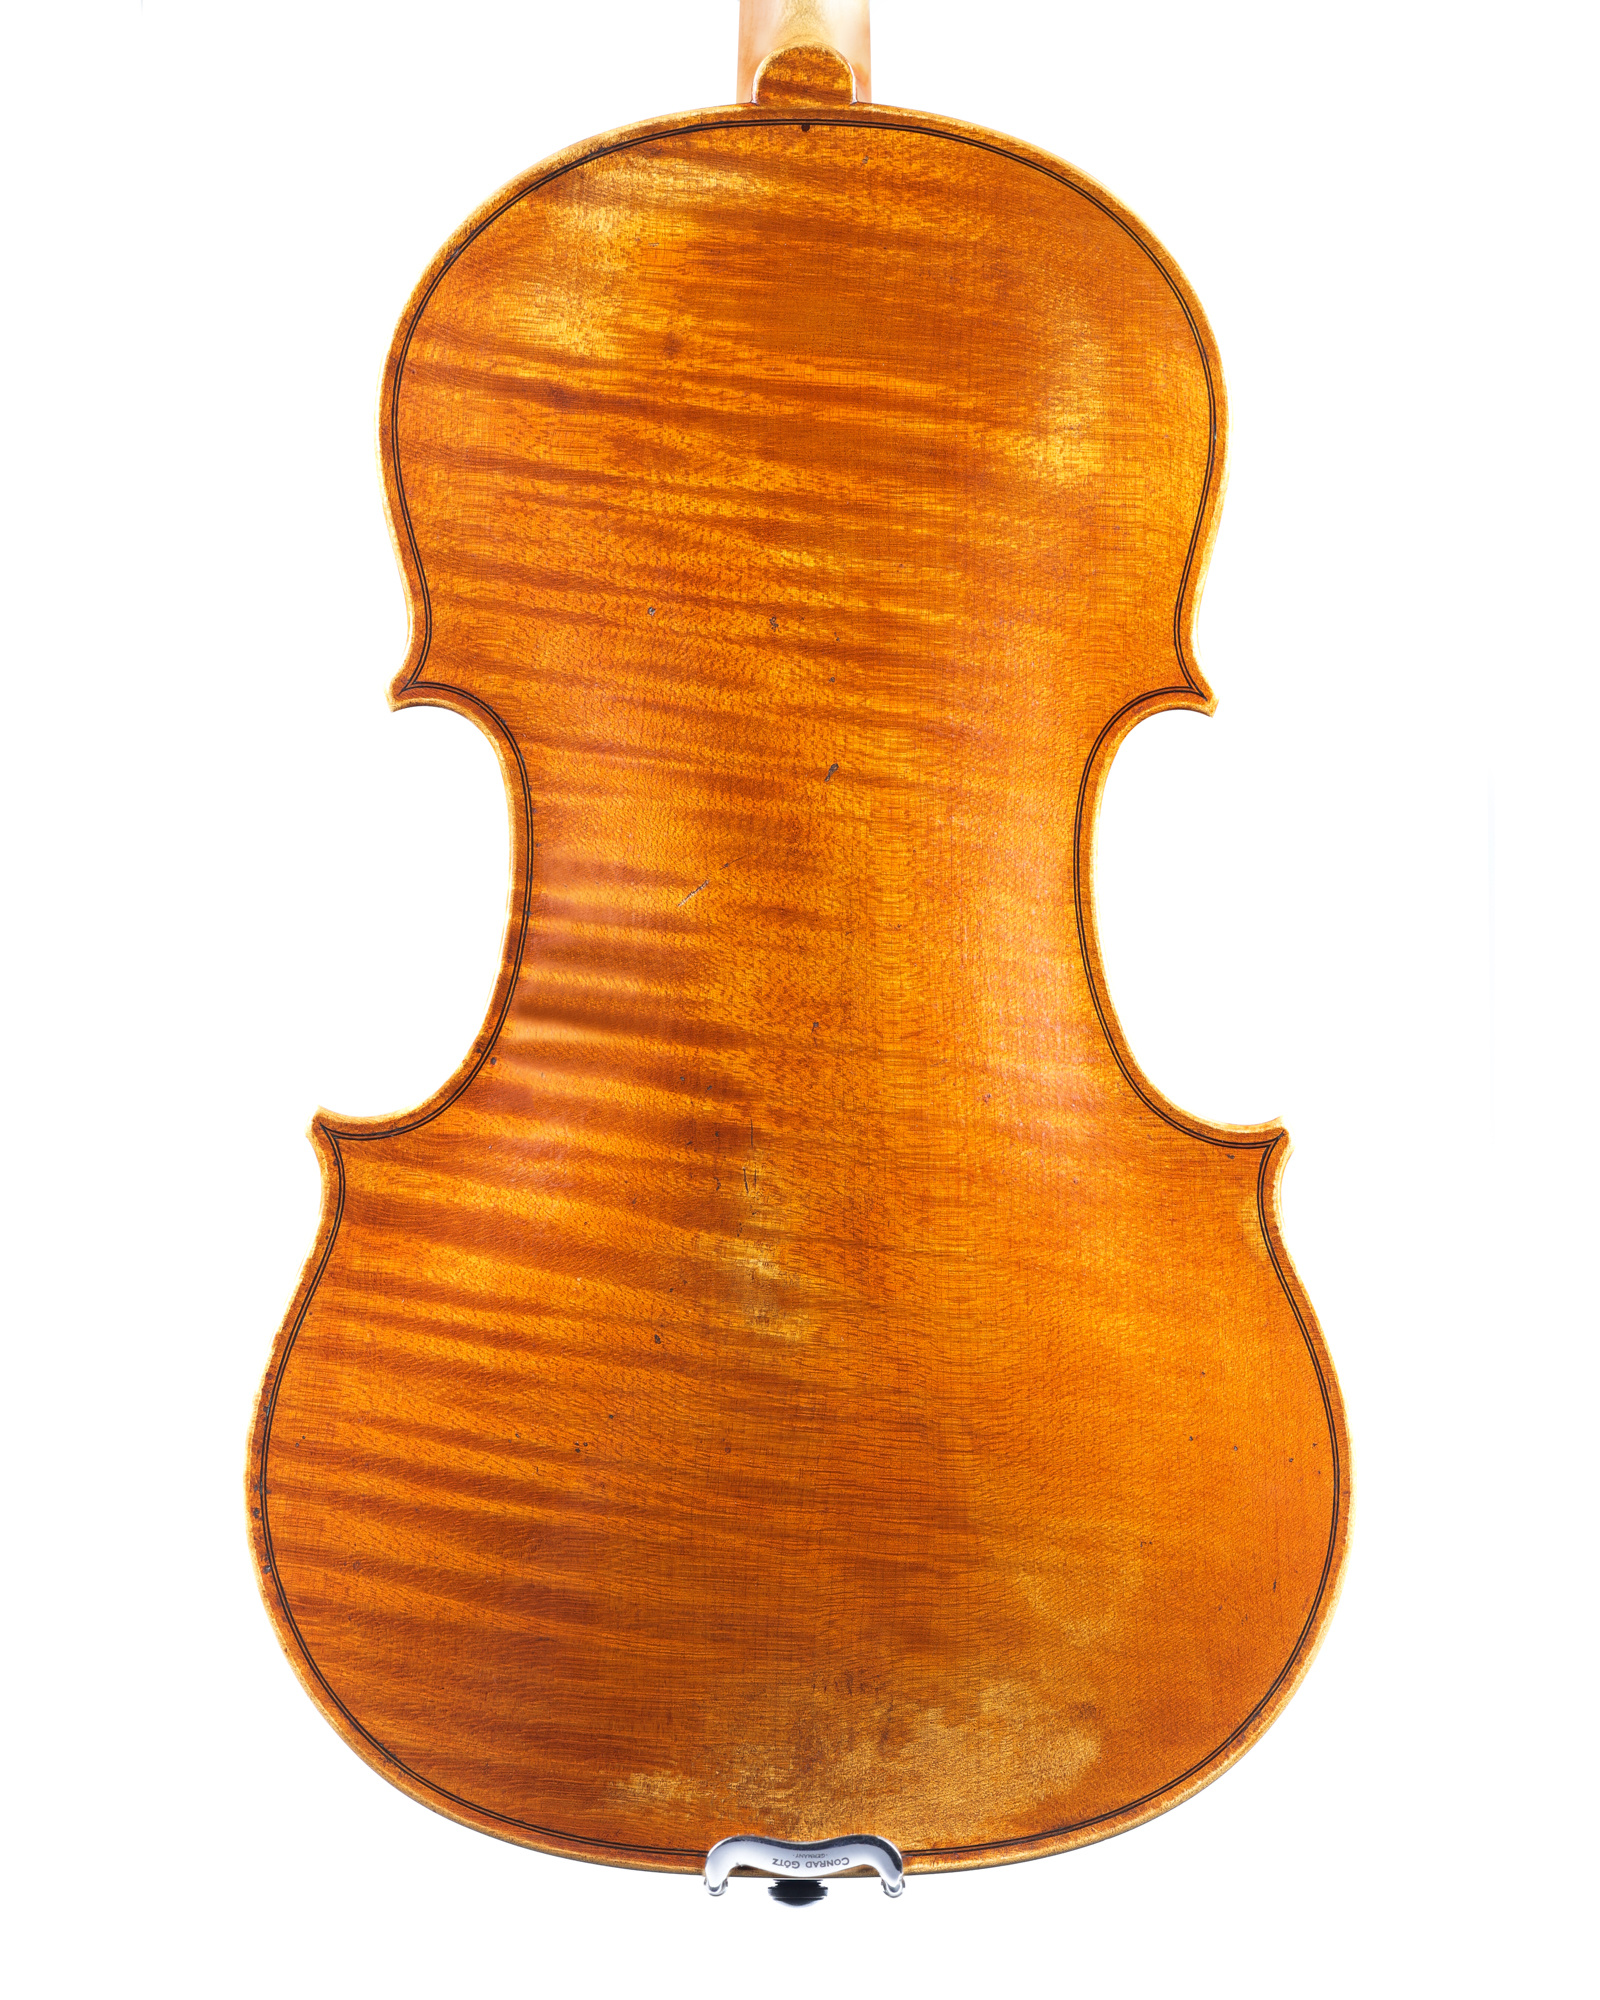 Stephen Lohmann 15 3/4" viola, 2022, Fair Oaks, CA